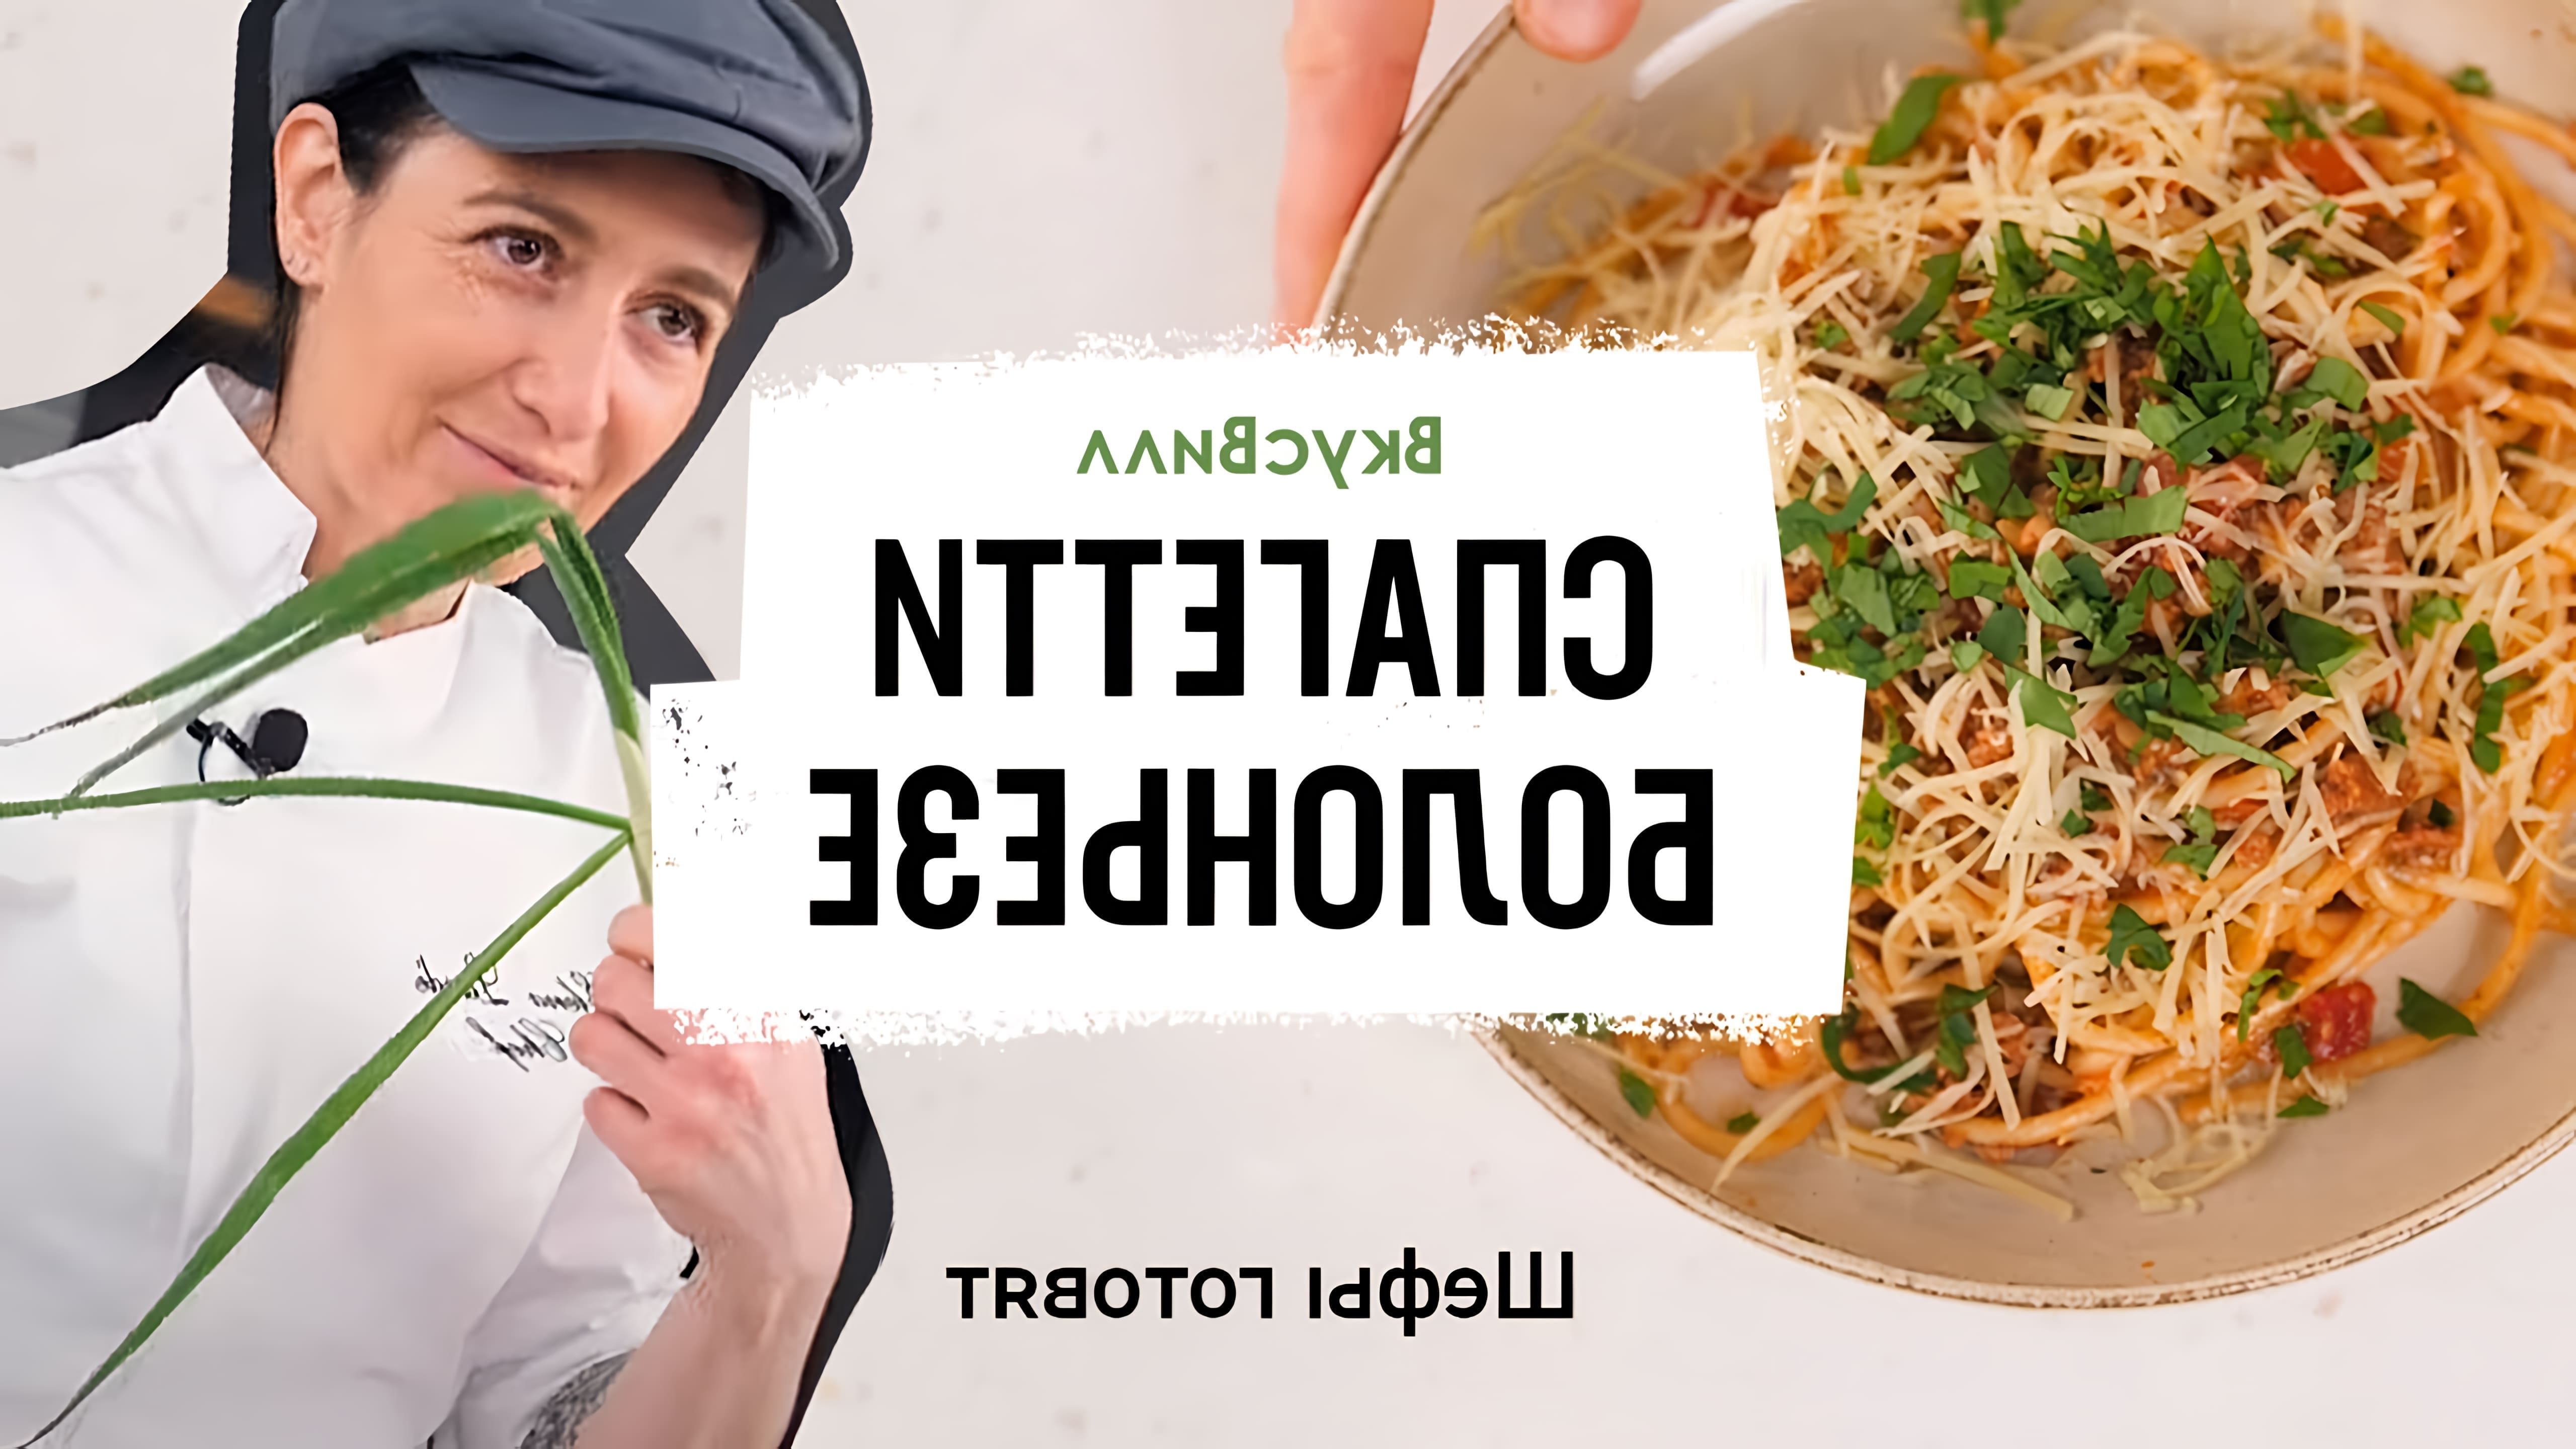 В этом видео бренд-шеф ВкусВилл показывает, как приготовить спагетти болоньезе